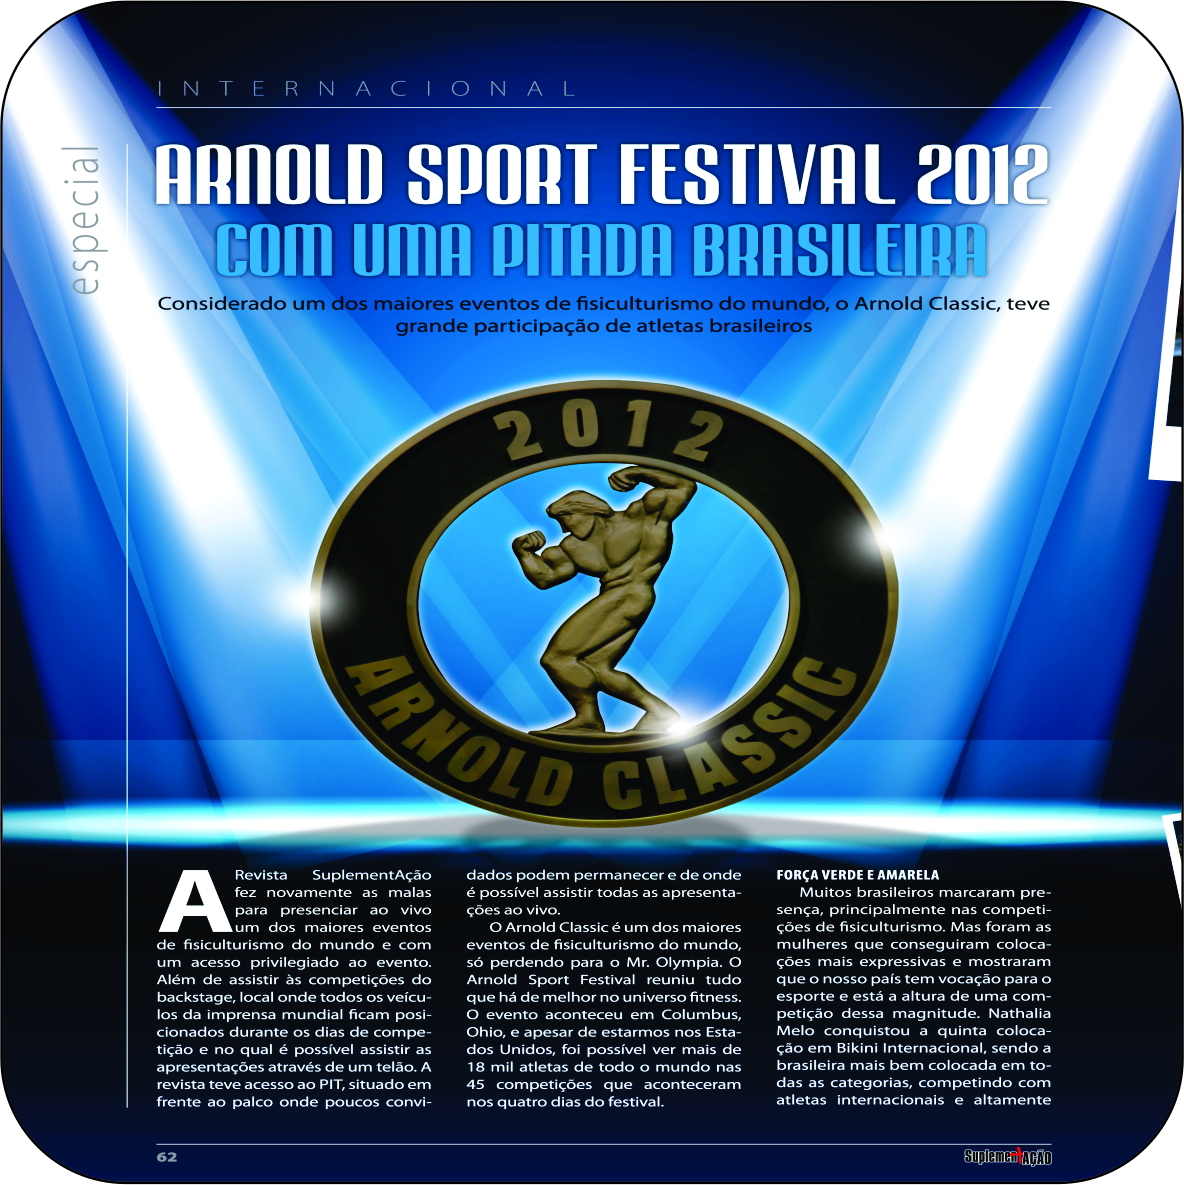 Arnold Sport Festival 2012 com uma pitada brasileira